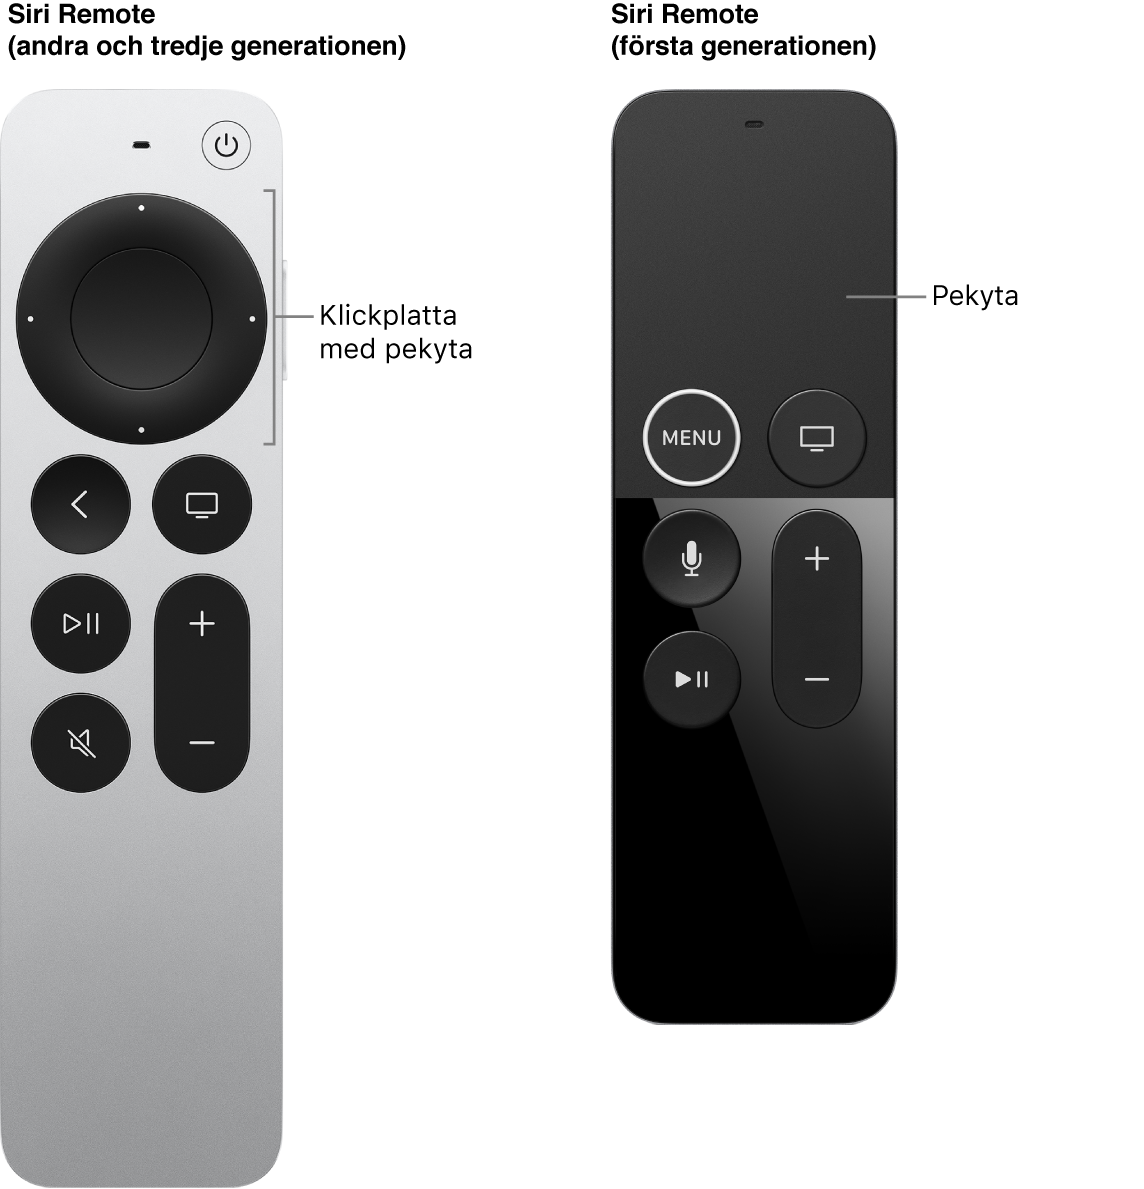 Siri Remote (andra och tredje generationen) med klickplatta och Siri Remote (första generationen) med tryckområde